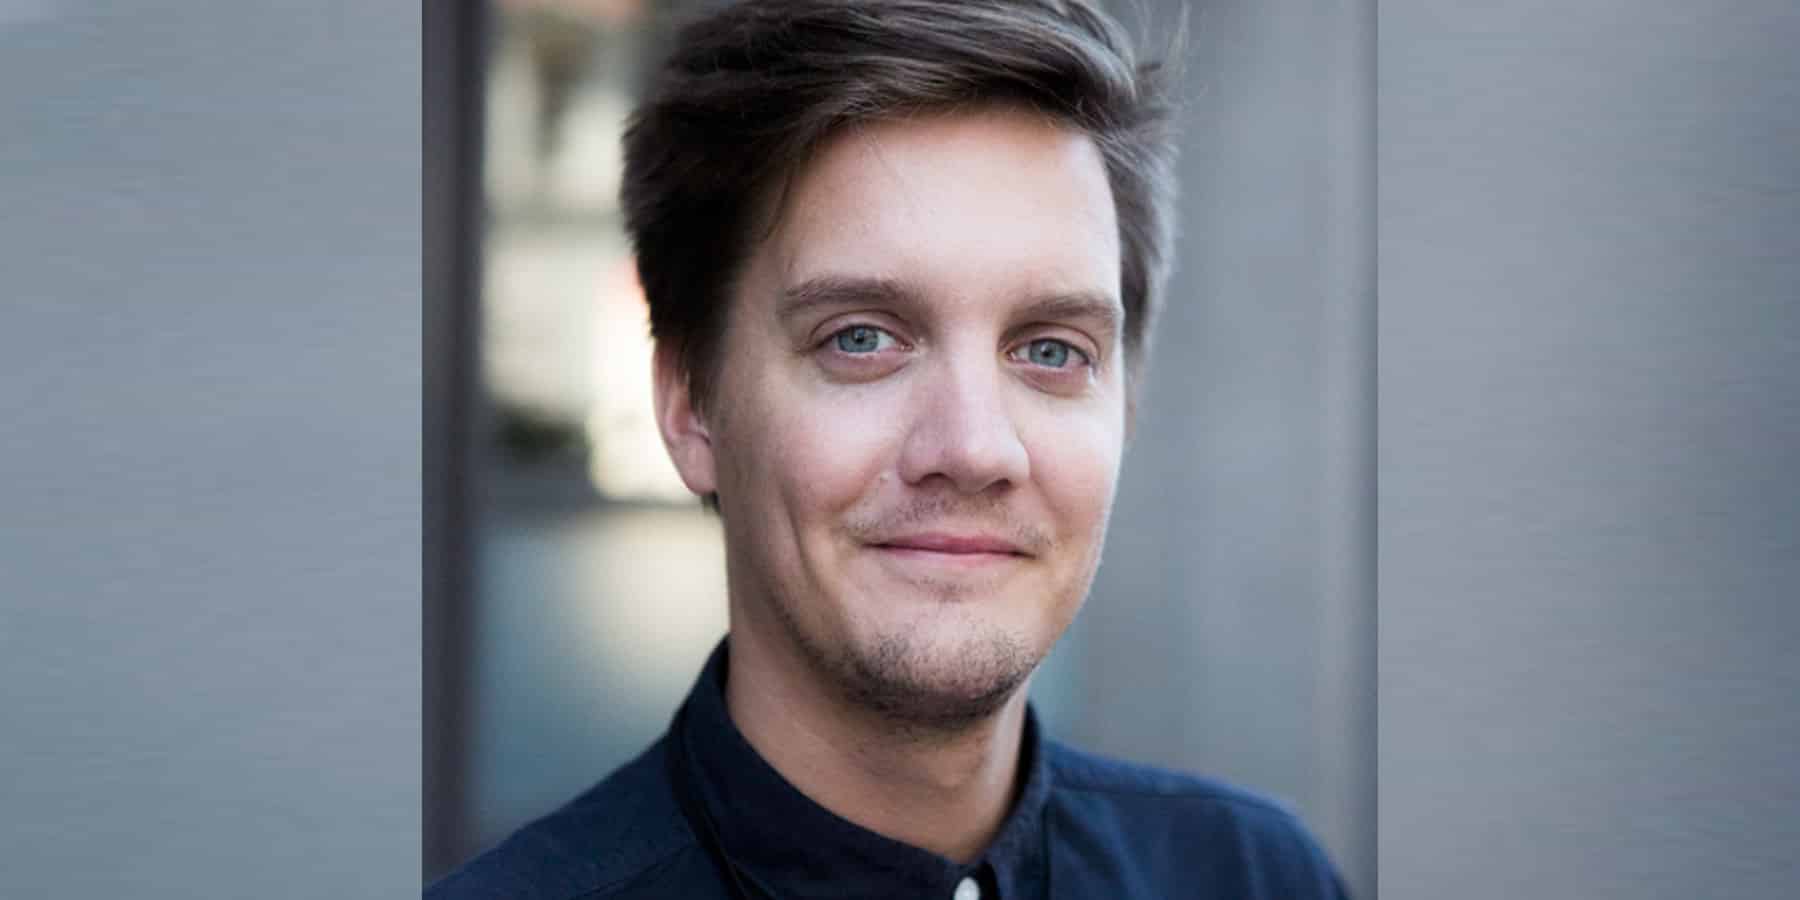 Marius Thorkildsen (Schibsted) ist einer der Keynoter beim zehnten scoopcamp am 28. September 2018